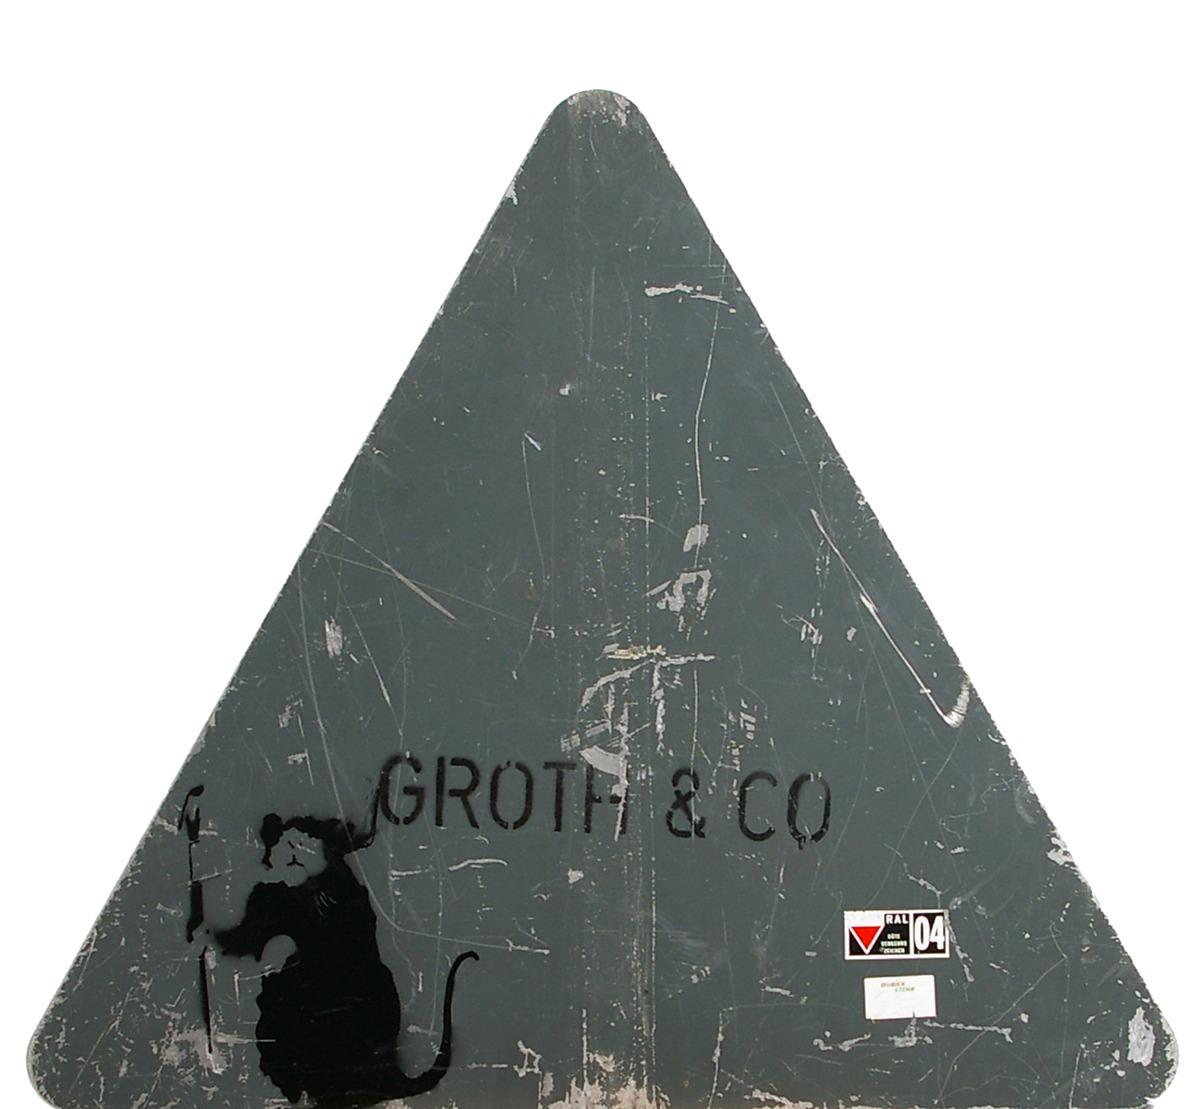 STOPPAD RÅTTA Försäljningen av gatuskylten med en sprejad Banksy-råtta stoppades i går av auktionsfirman Lauritz. Verket var värderat till 120 000 kronor.